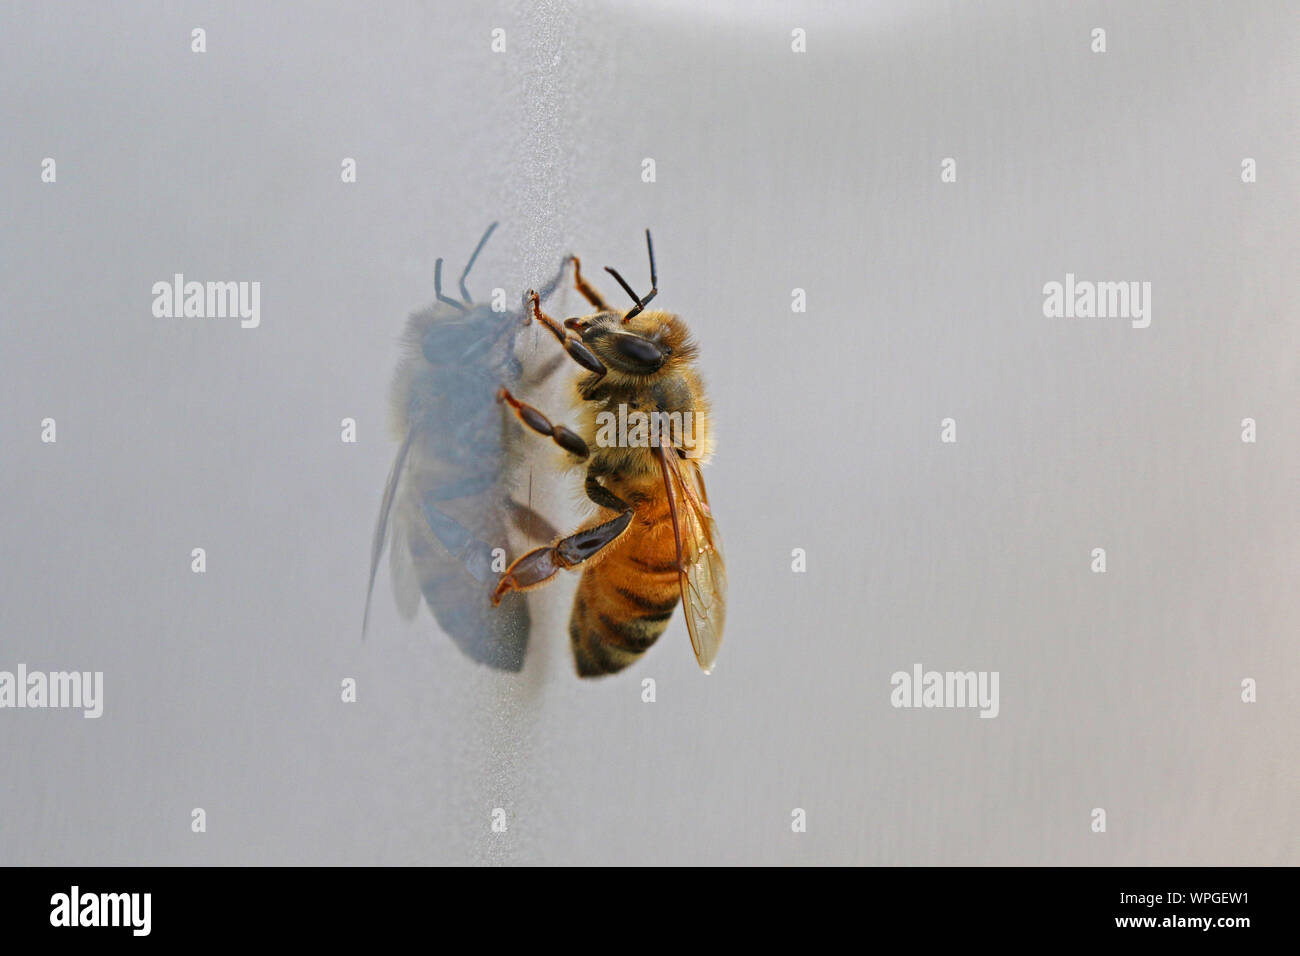 Il miele delle api o lavoratore bee extreme close up latino apis mellifera strisciando su una superficie lucida in primavera in Italia Foto Stock